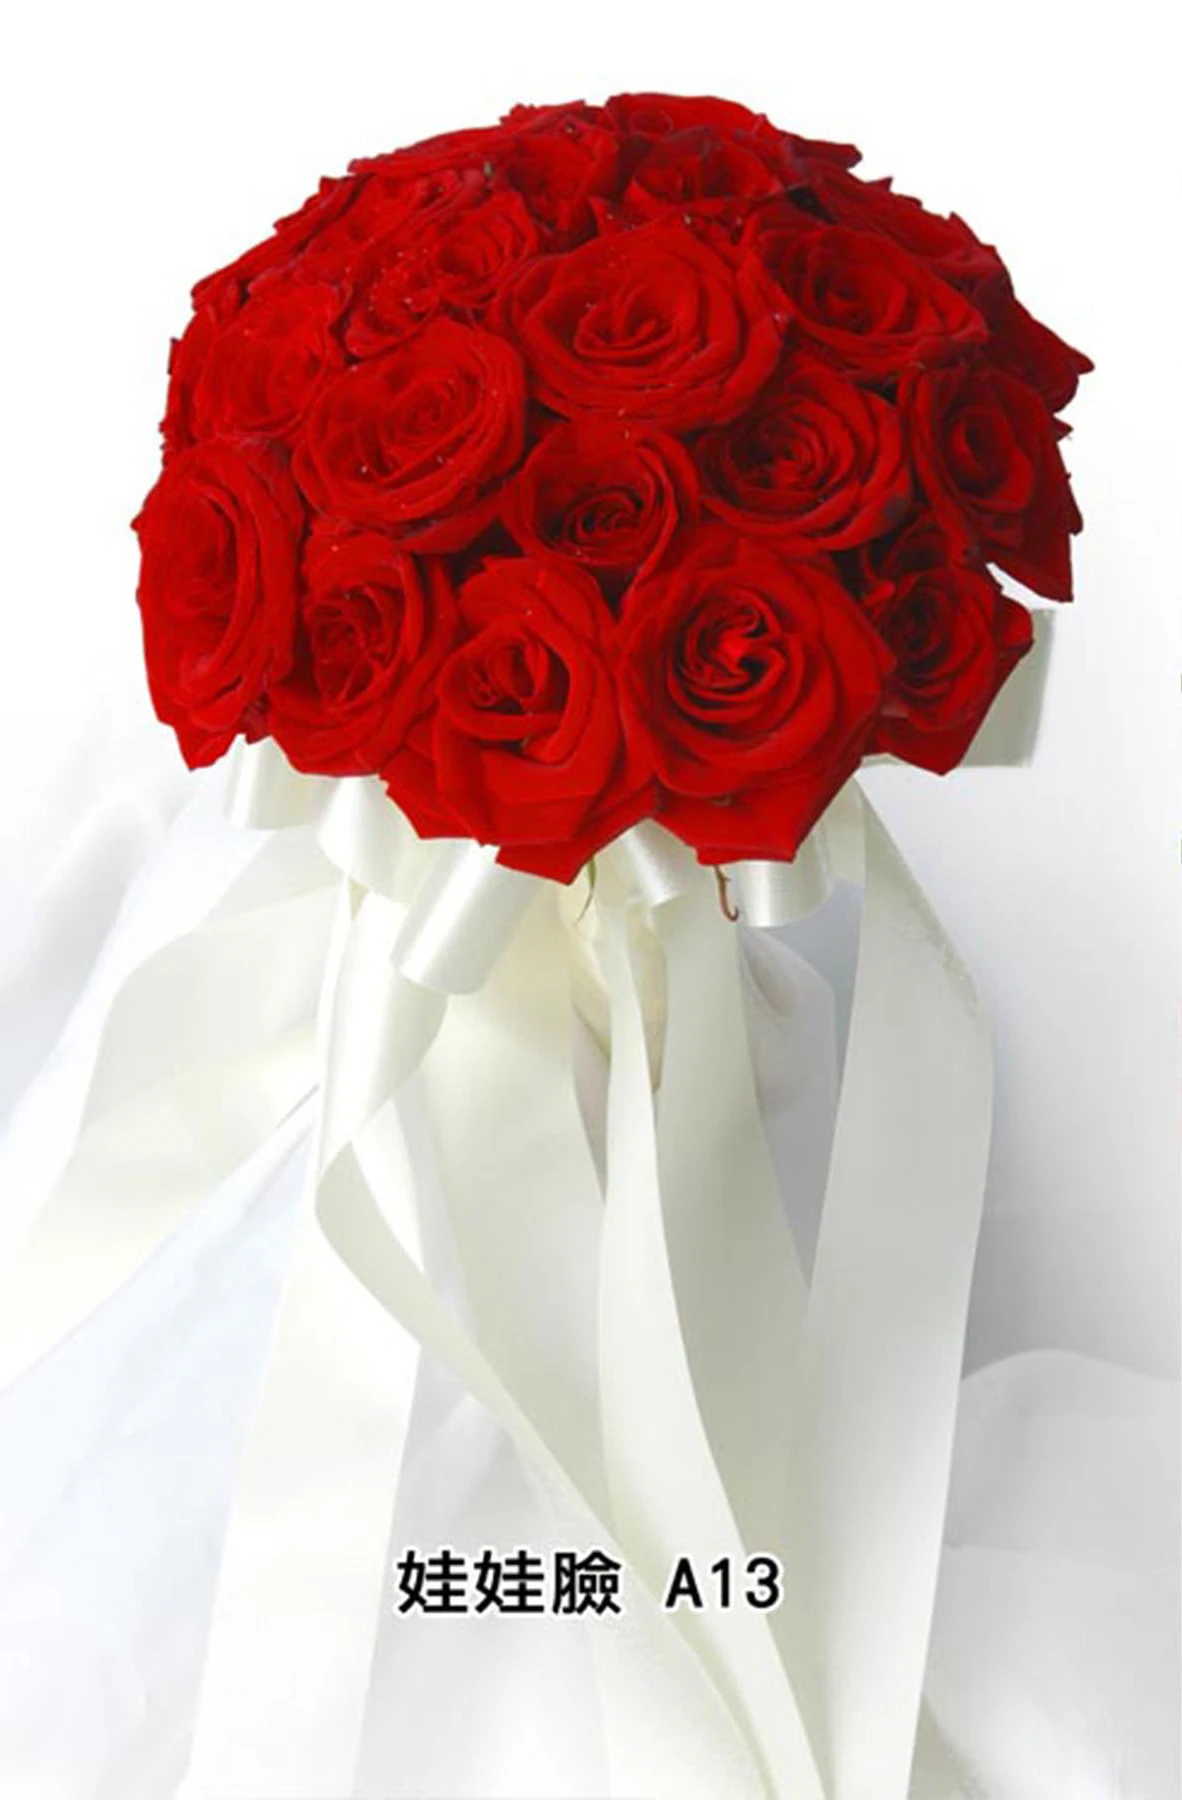 新娘捧花-花材有紅玫瑰花,緞帶,花束型